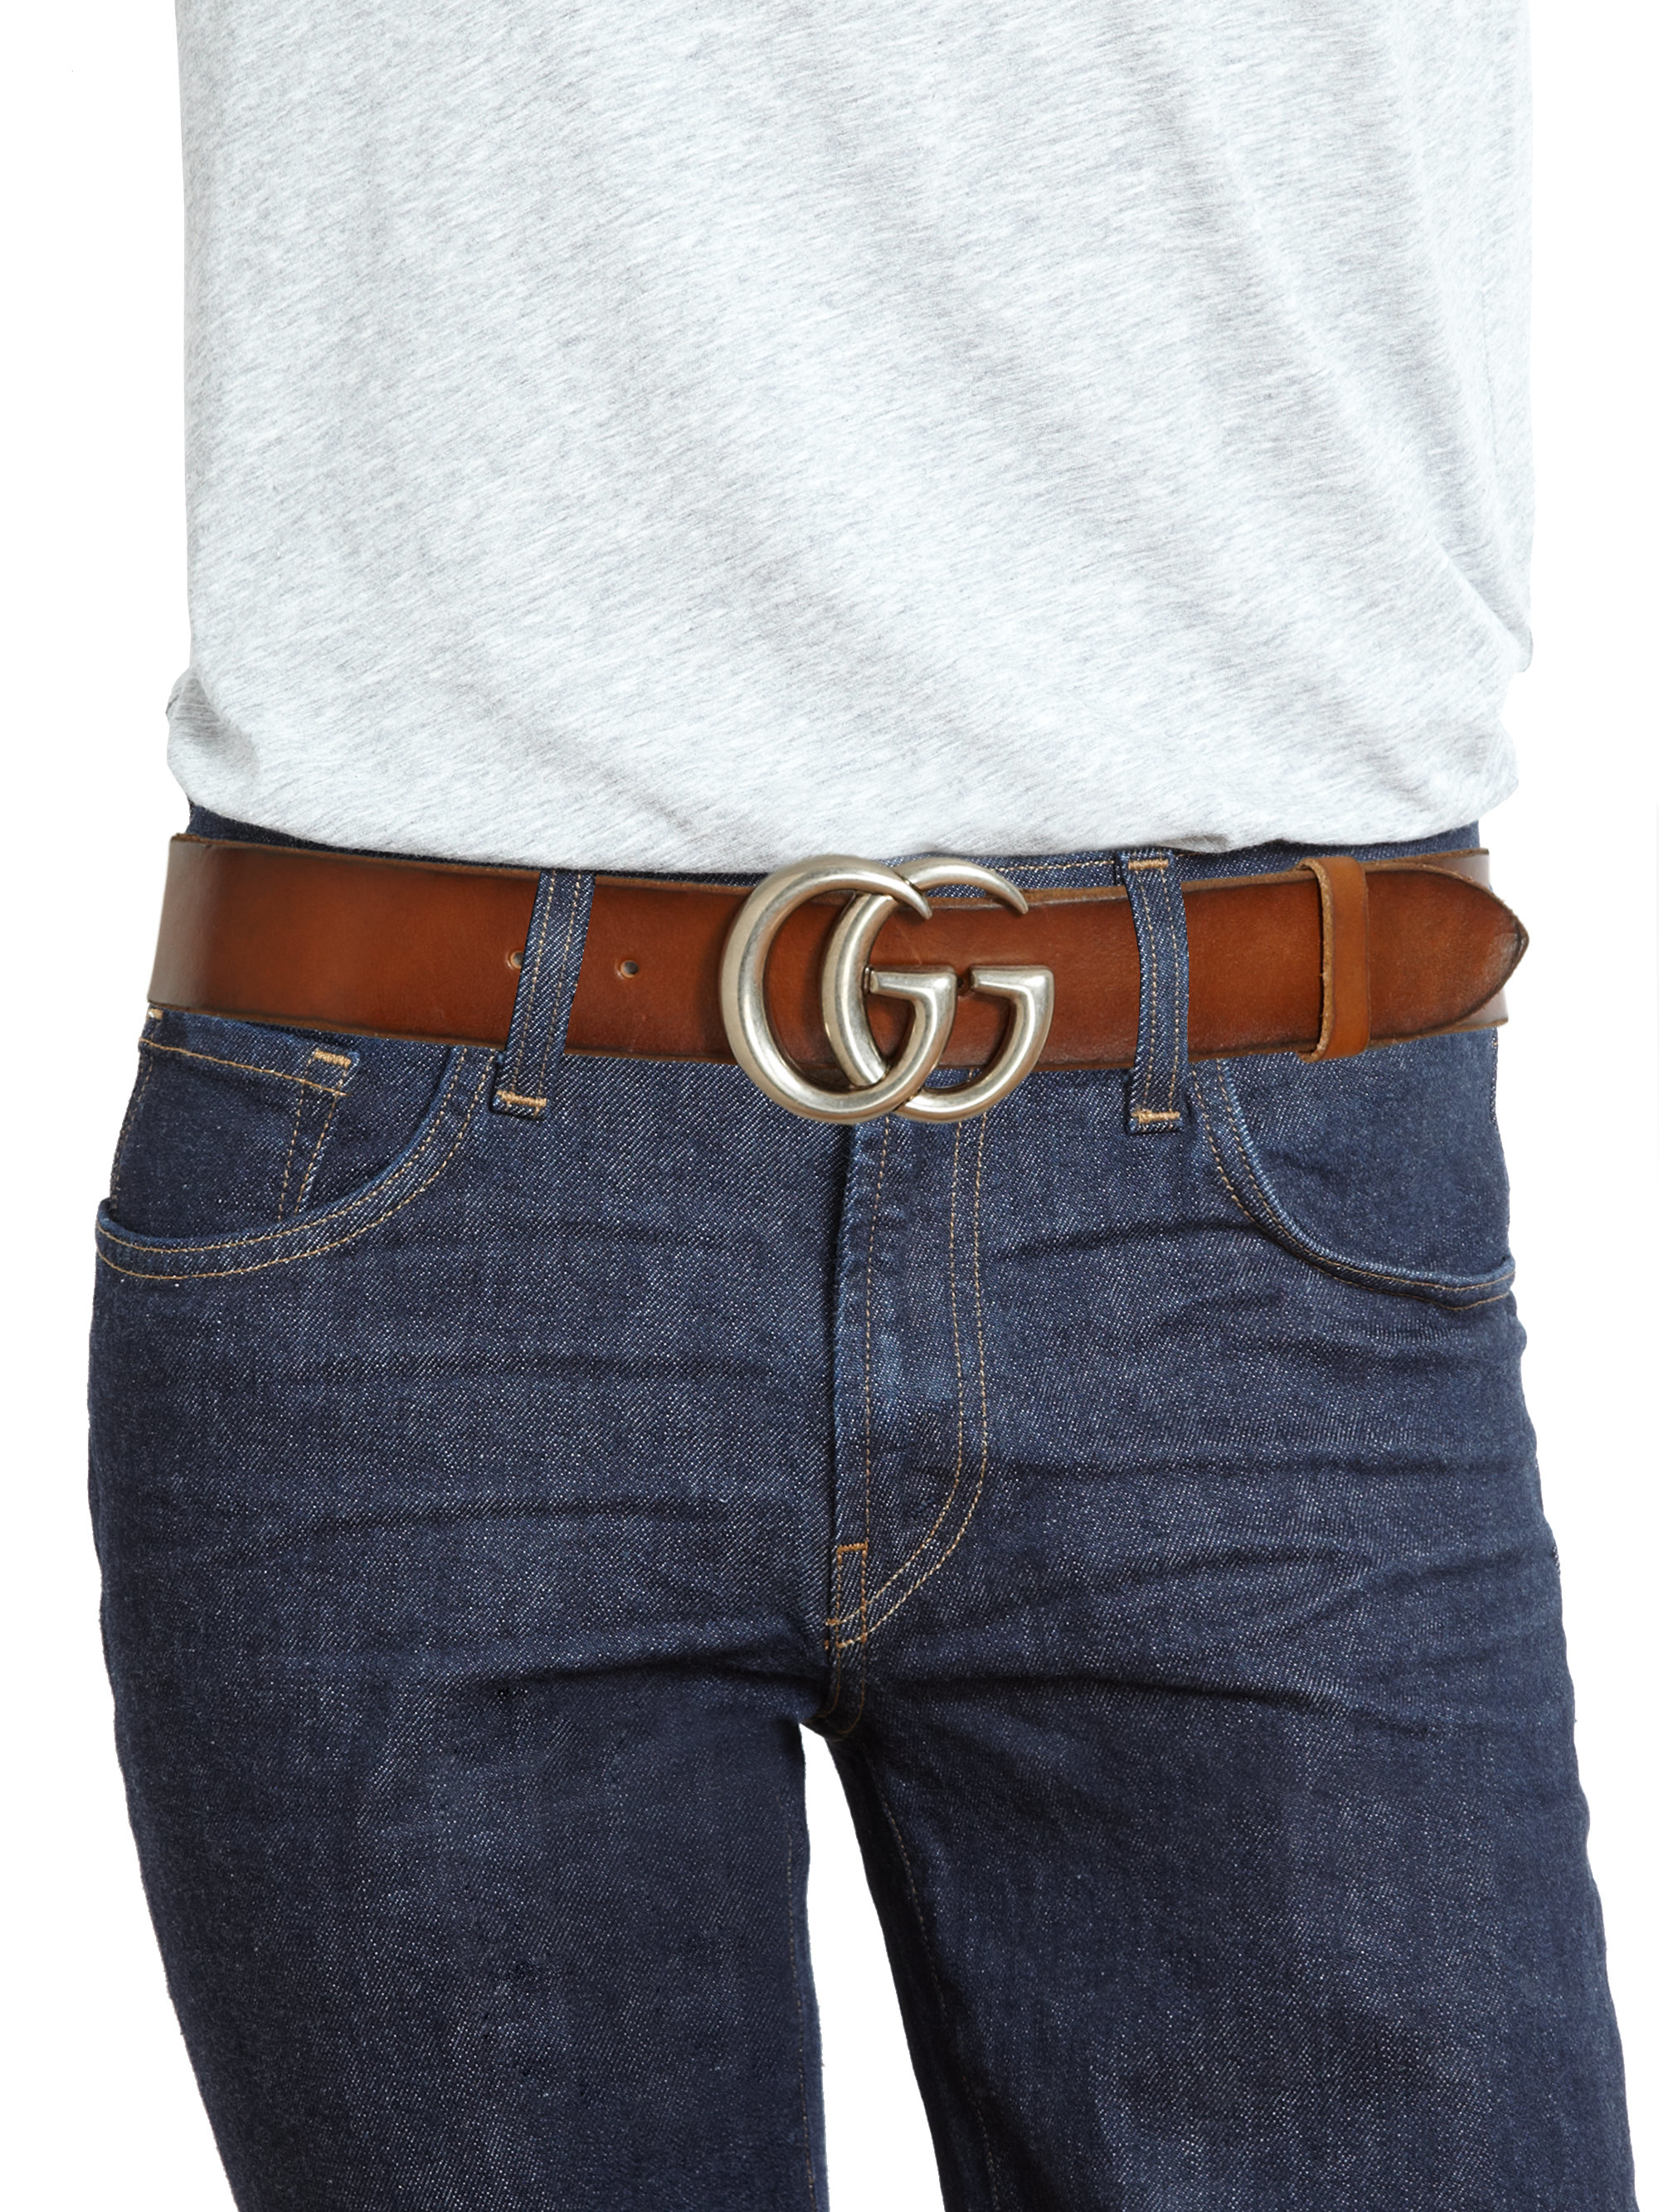 gg brown belt